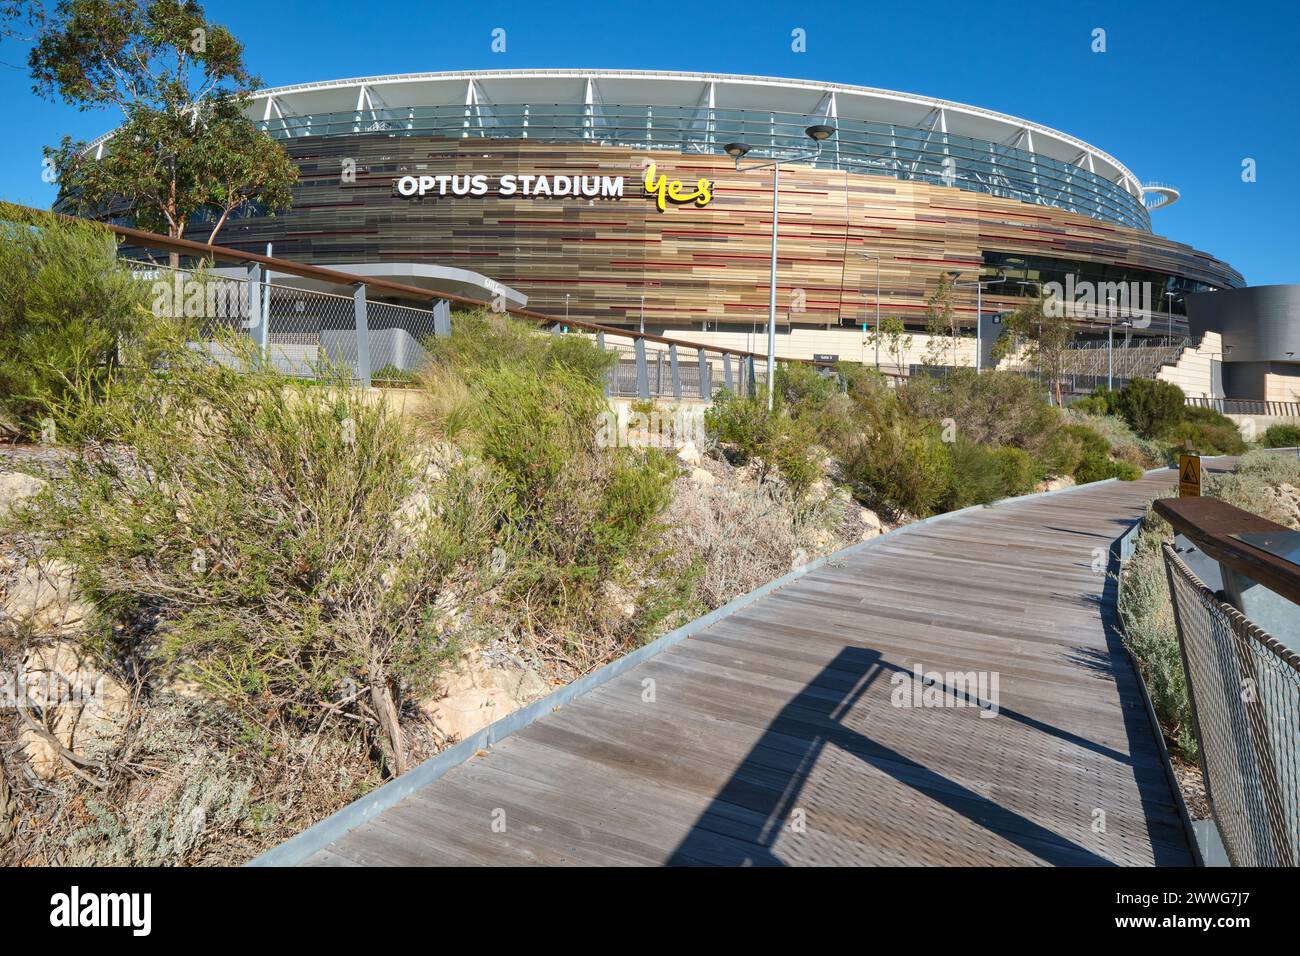 Una passerella in legno lungo il bordo del polifunzionale Optus Stadium, Burswood, Perth, Australia Occidentale. Foto Stock